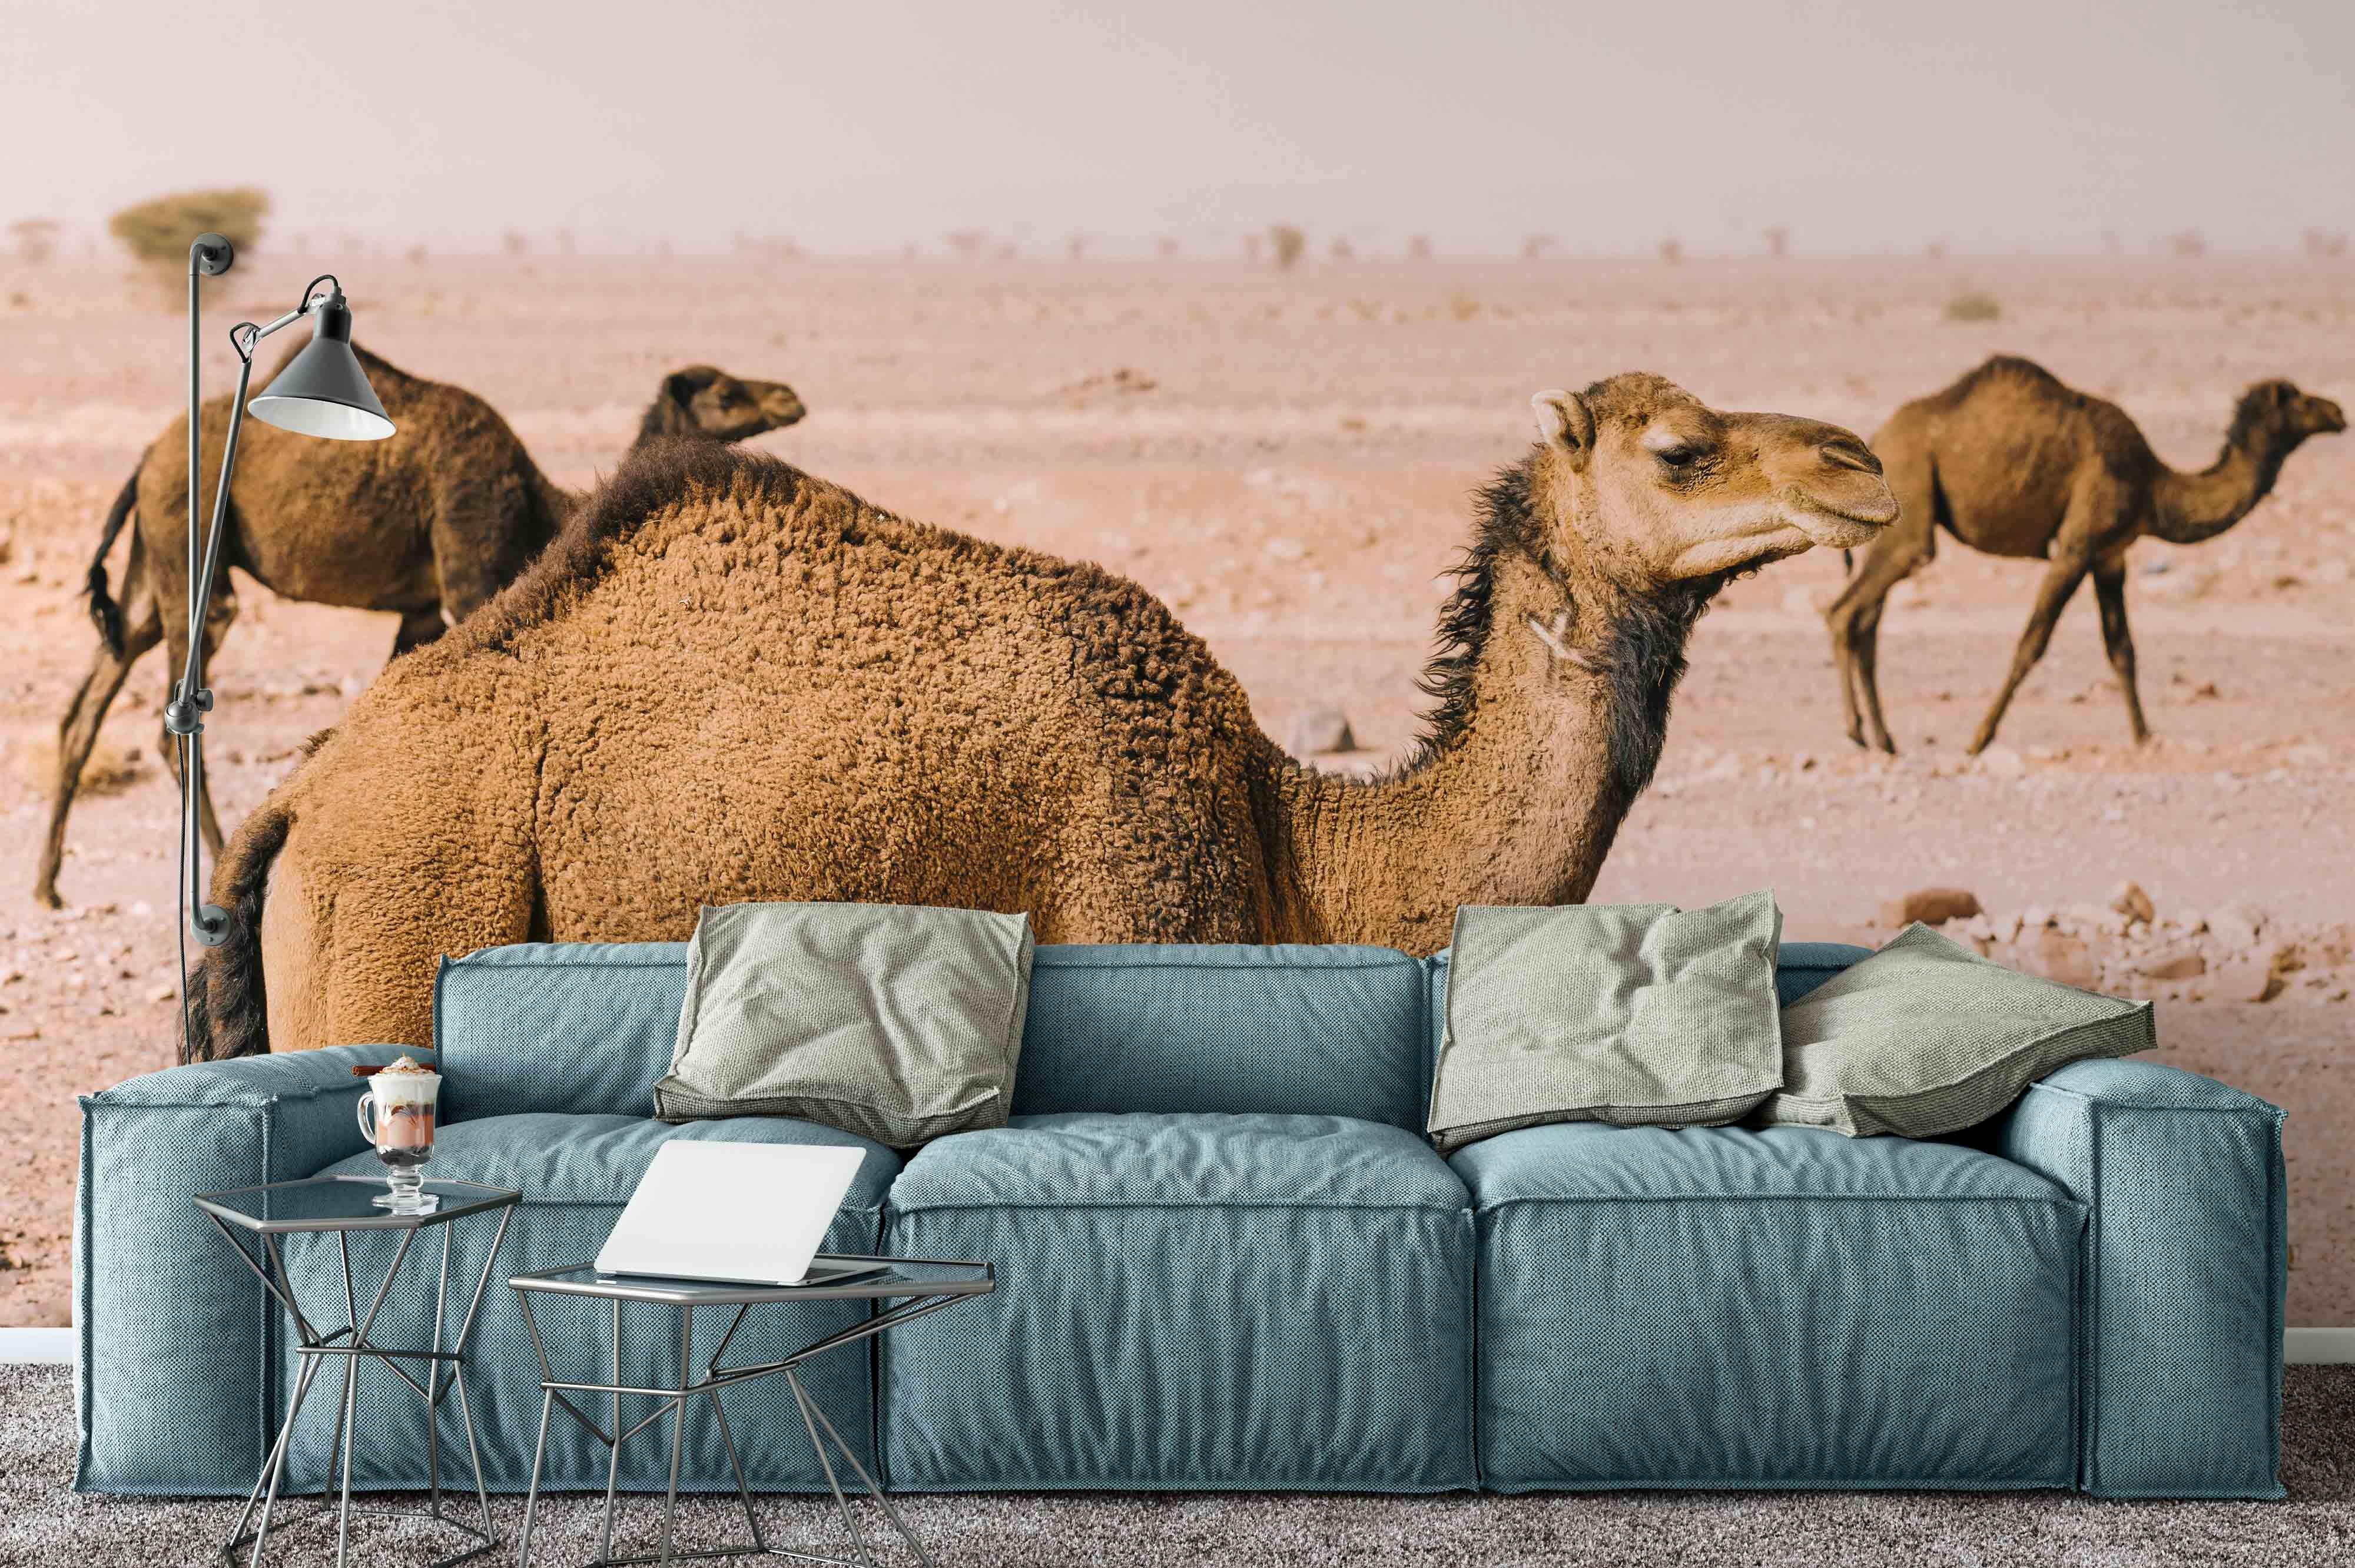 3D Camel Desert Wall Mural Wallpaper 22- Jess Art Decoration